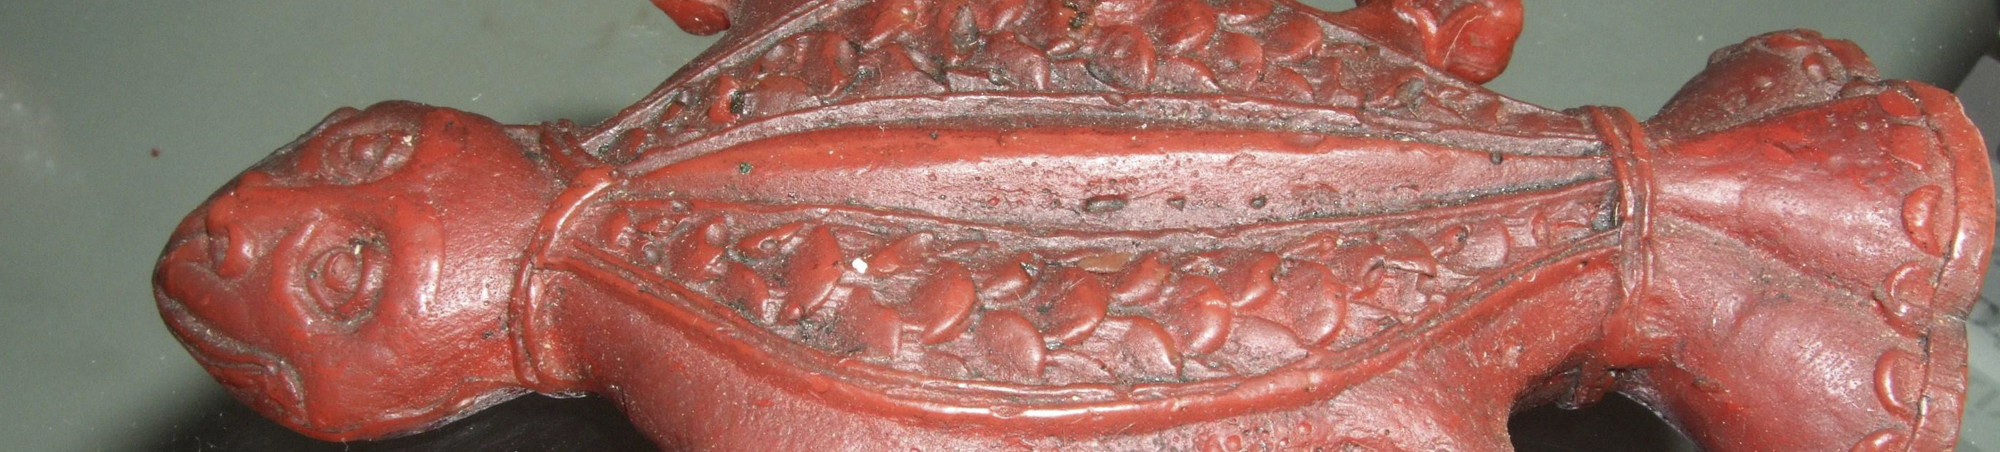 Stark stilisierte Darstellung einer Kröte. Der Kopf trägt menschliche Züge. Symetriscch angeordnete, kurze Beine. Auf der Bauchseite und auf dem Rücken geometrische Ornamente. Das hintere Ende ist wie eine Tülle geformt. Mit einer Model des 18. Jahrhunderts aus rotem Wachs gegossen. 